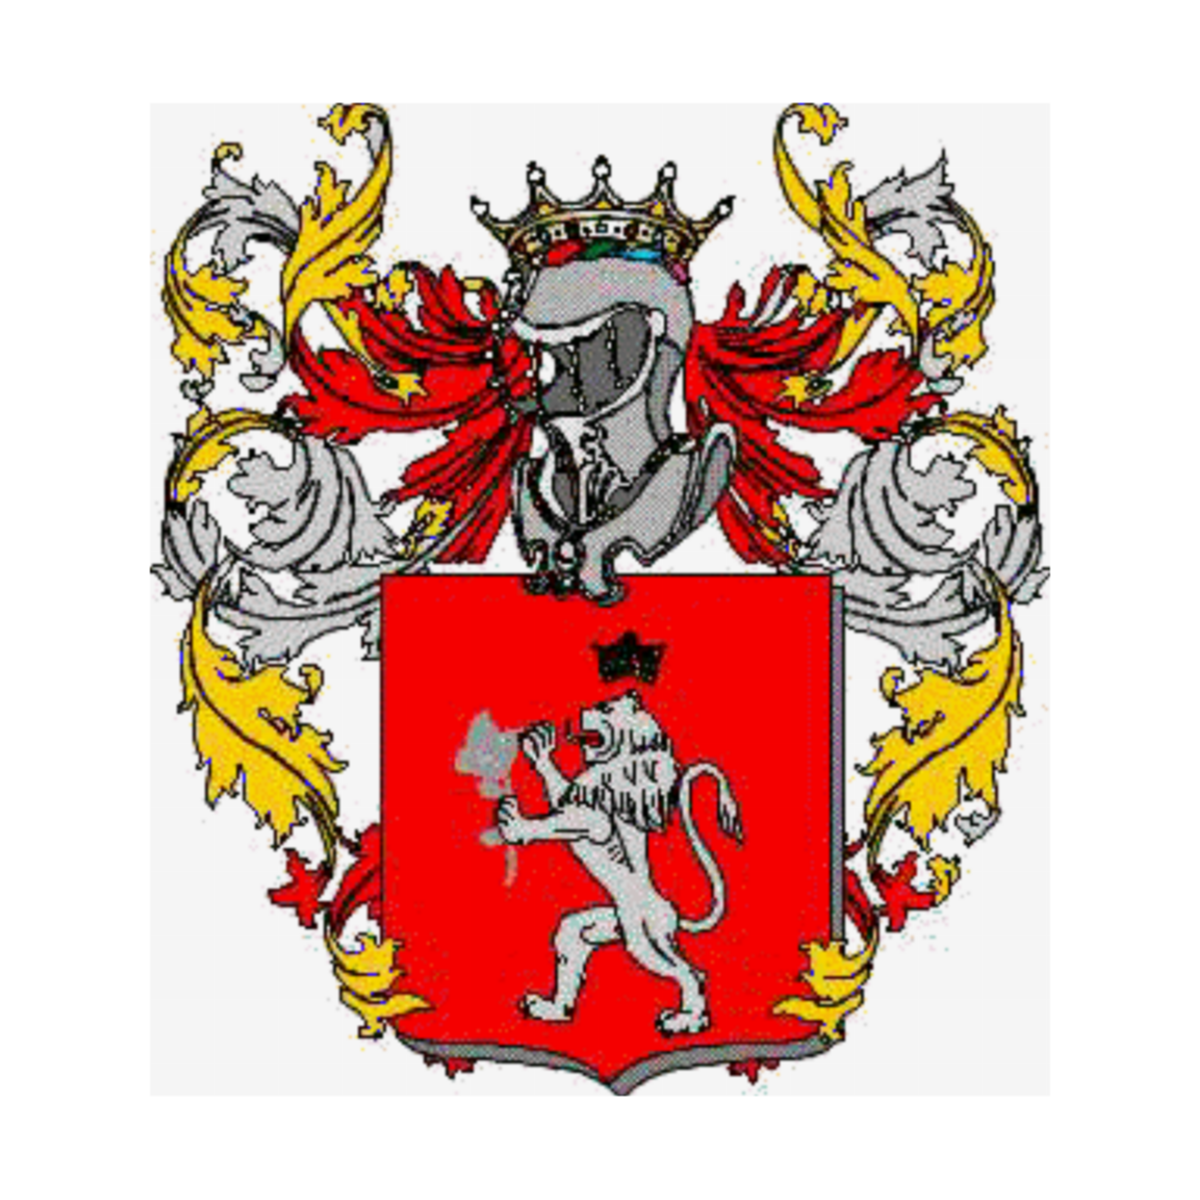 Wappen der Familie Rosio